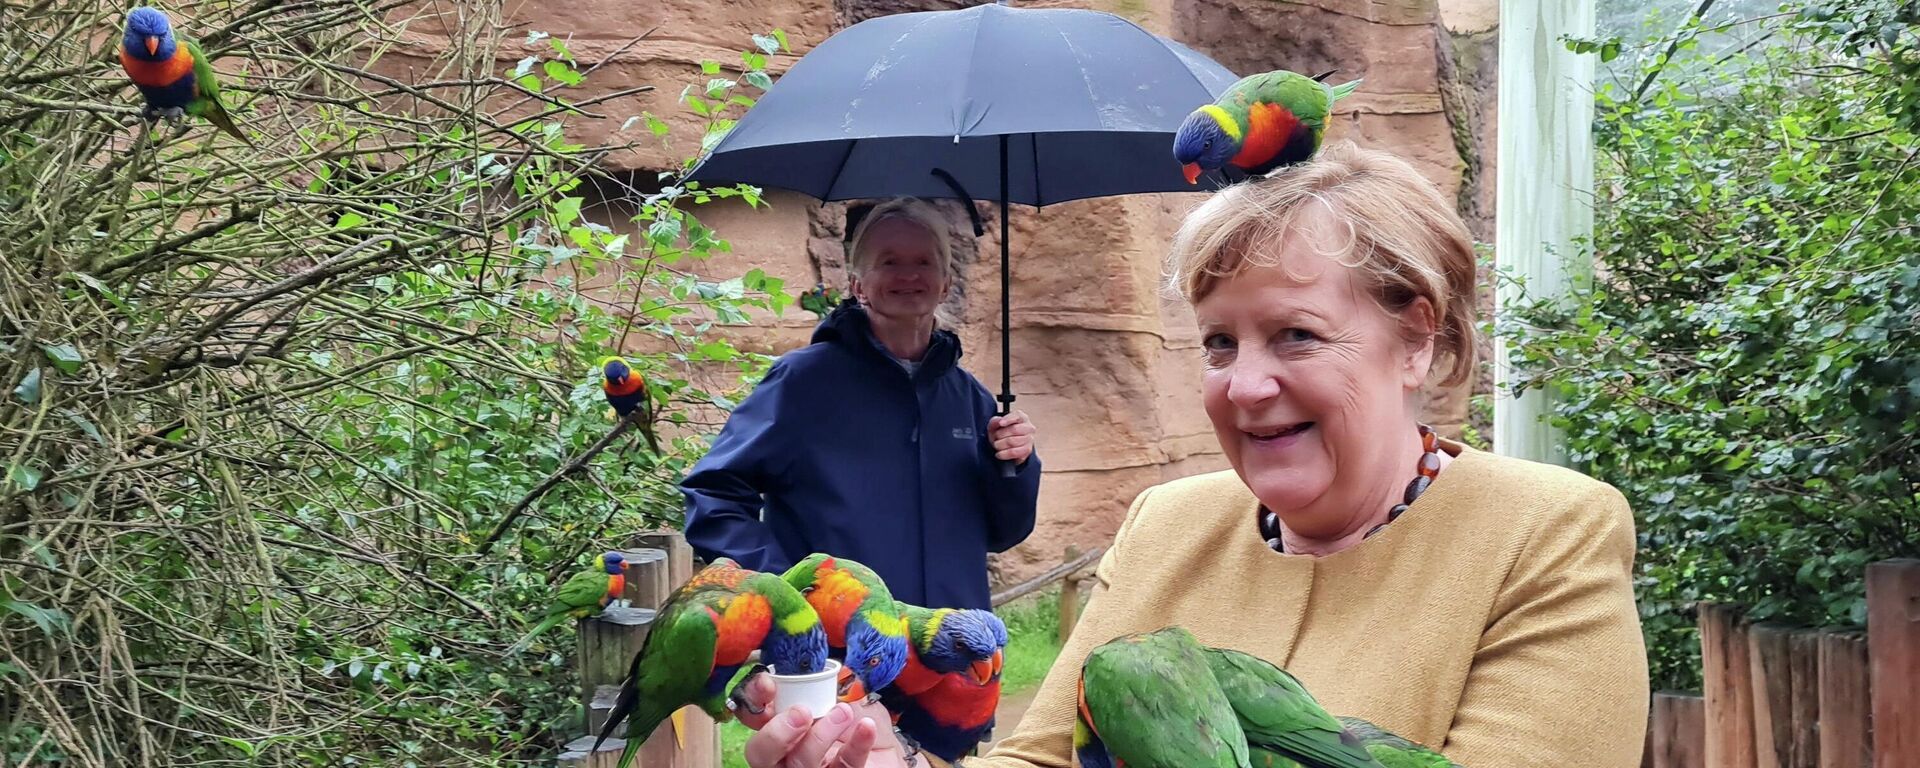 Ангела Меркель покормила птиц в парке - Sputnik Молдова, 1920, 24.09.2021